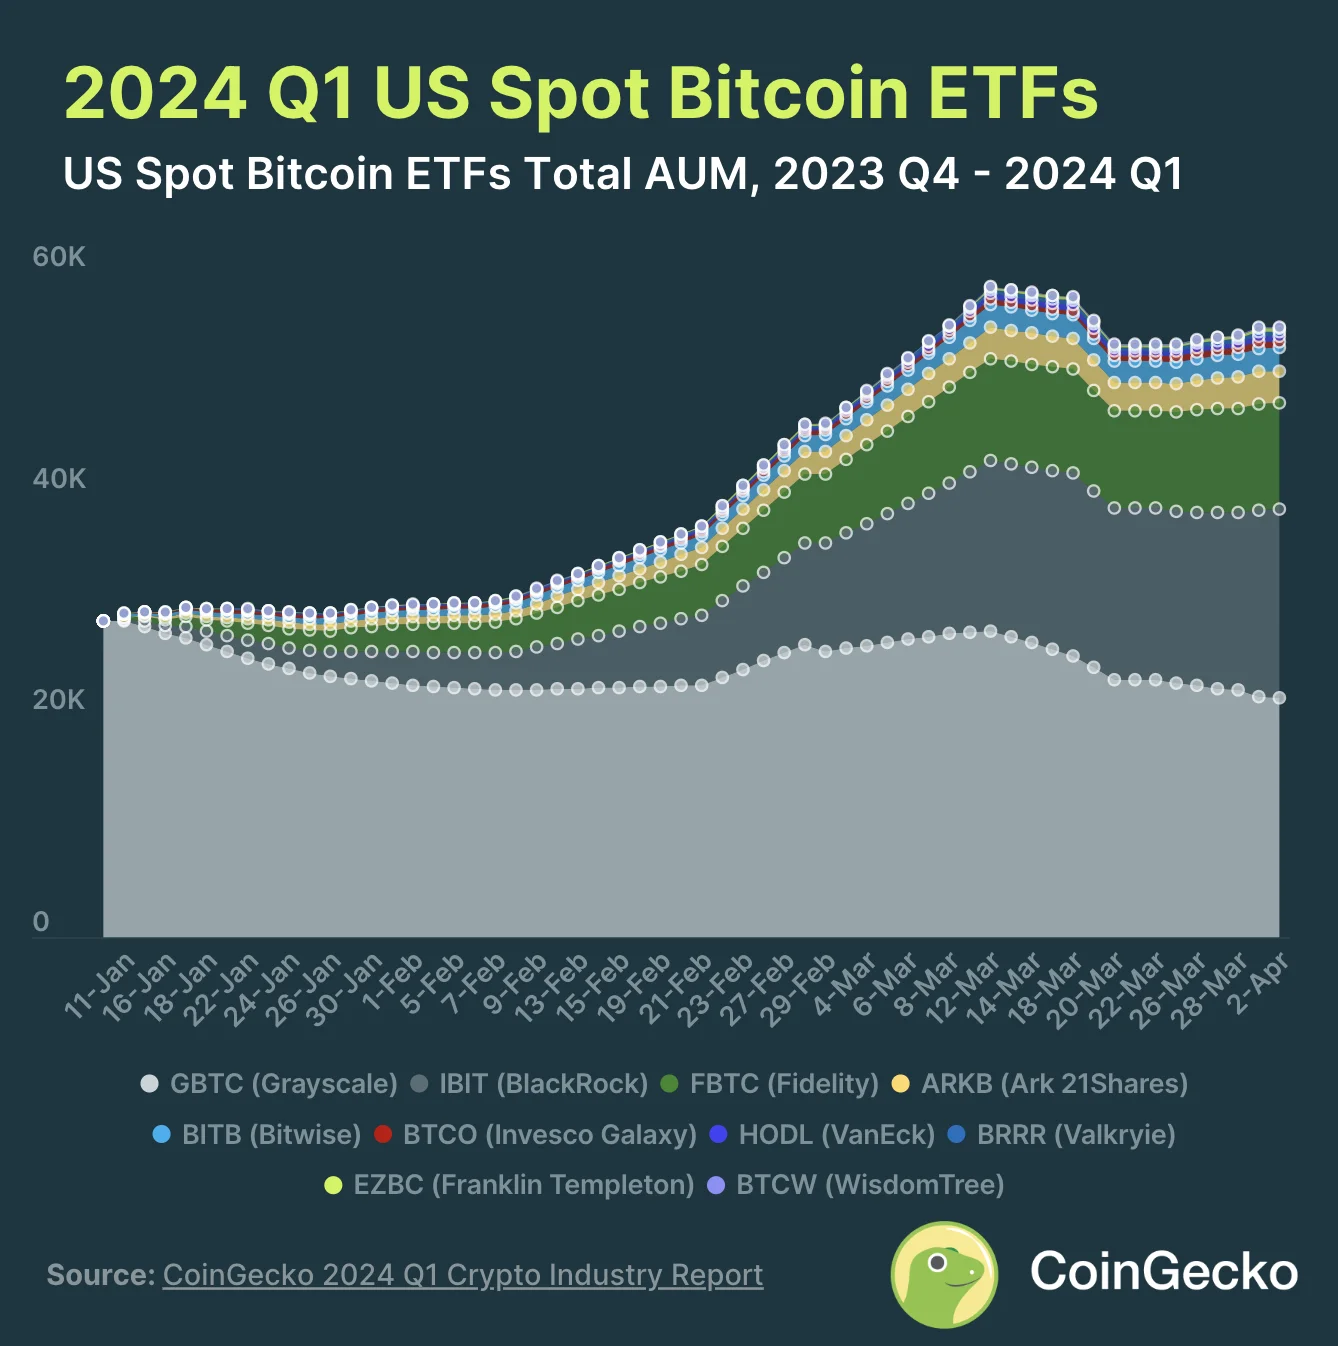 2. ԱՄՆ-ի Spot Bitcoin ETF-ները տեղի են ունեցել +$55.1B AUM-ում